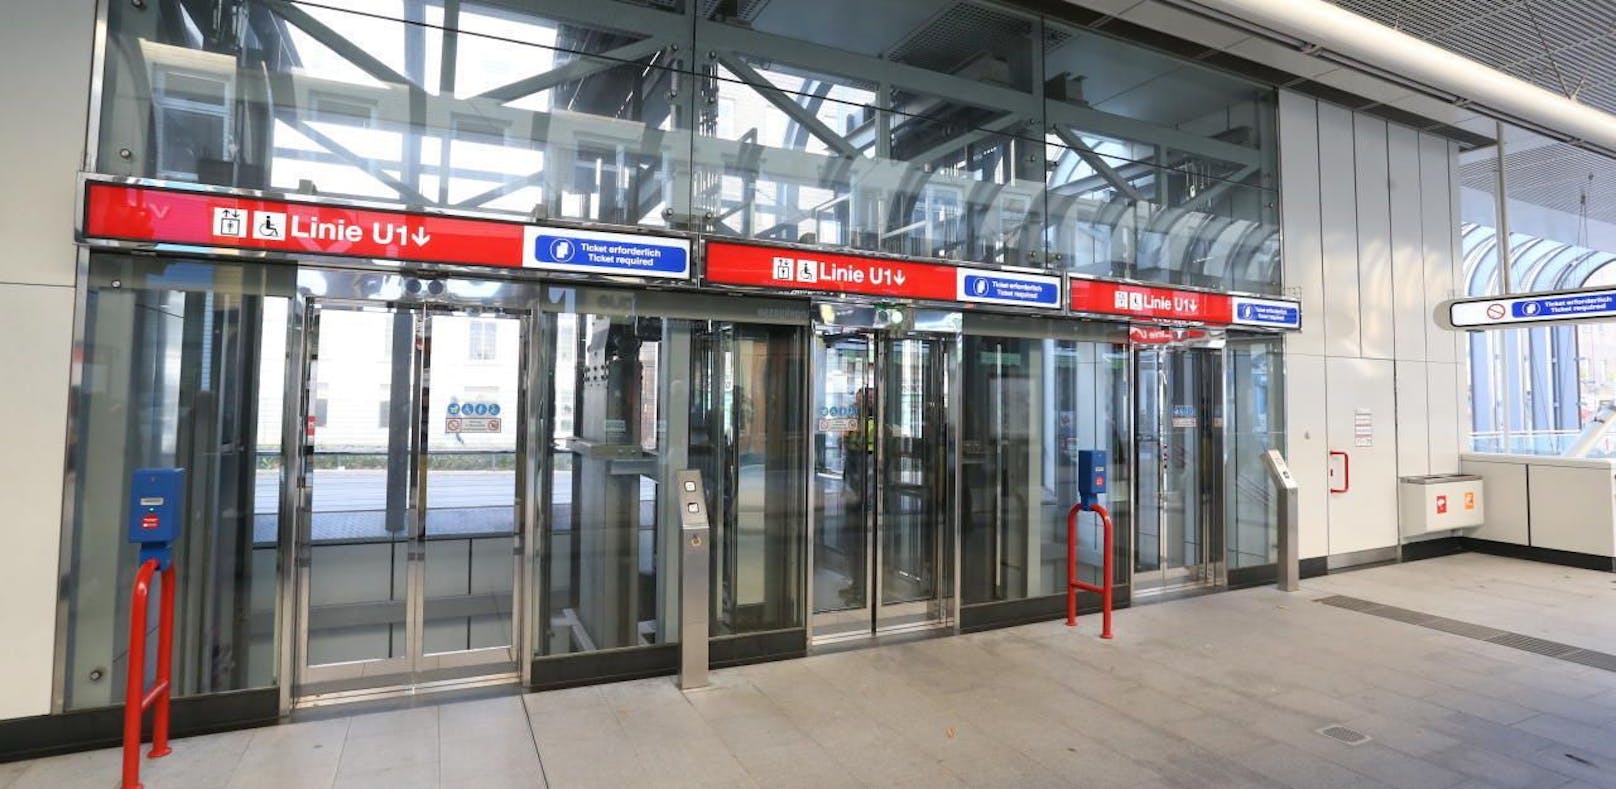 Die Wiener Linien investierten 2,2 Mio. Euro in die Erneuerung der Liftanlagen in den U-Bahnstationen. Damit sollen die Sicherheit und der Komfort für die Fahrgäste verbessert werden. 